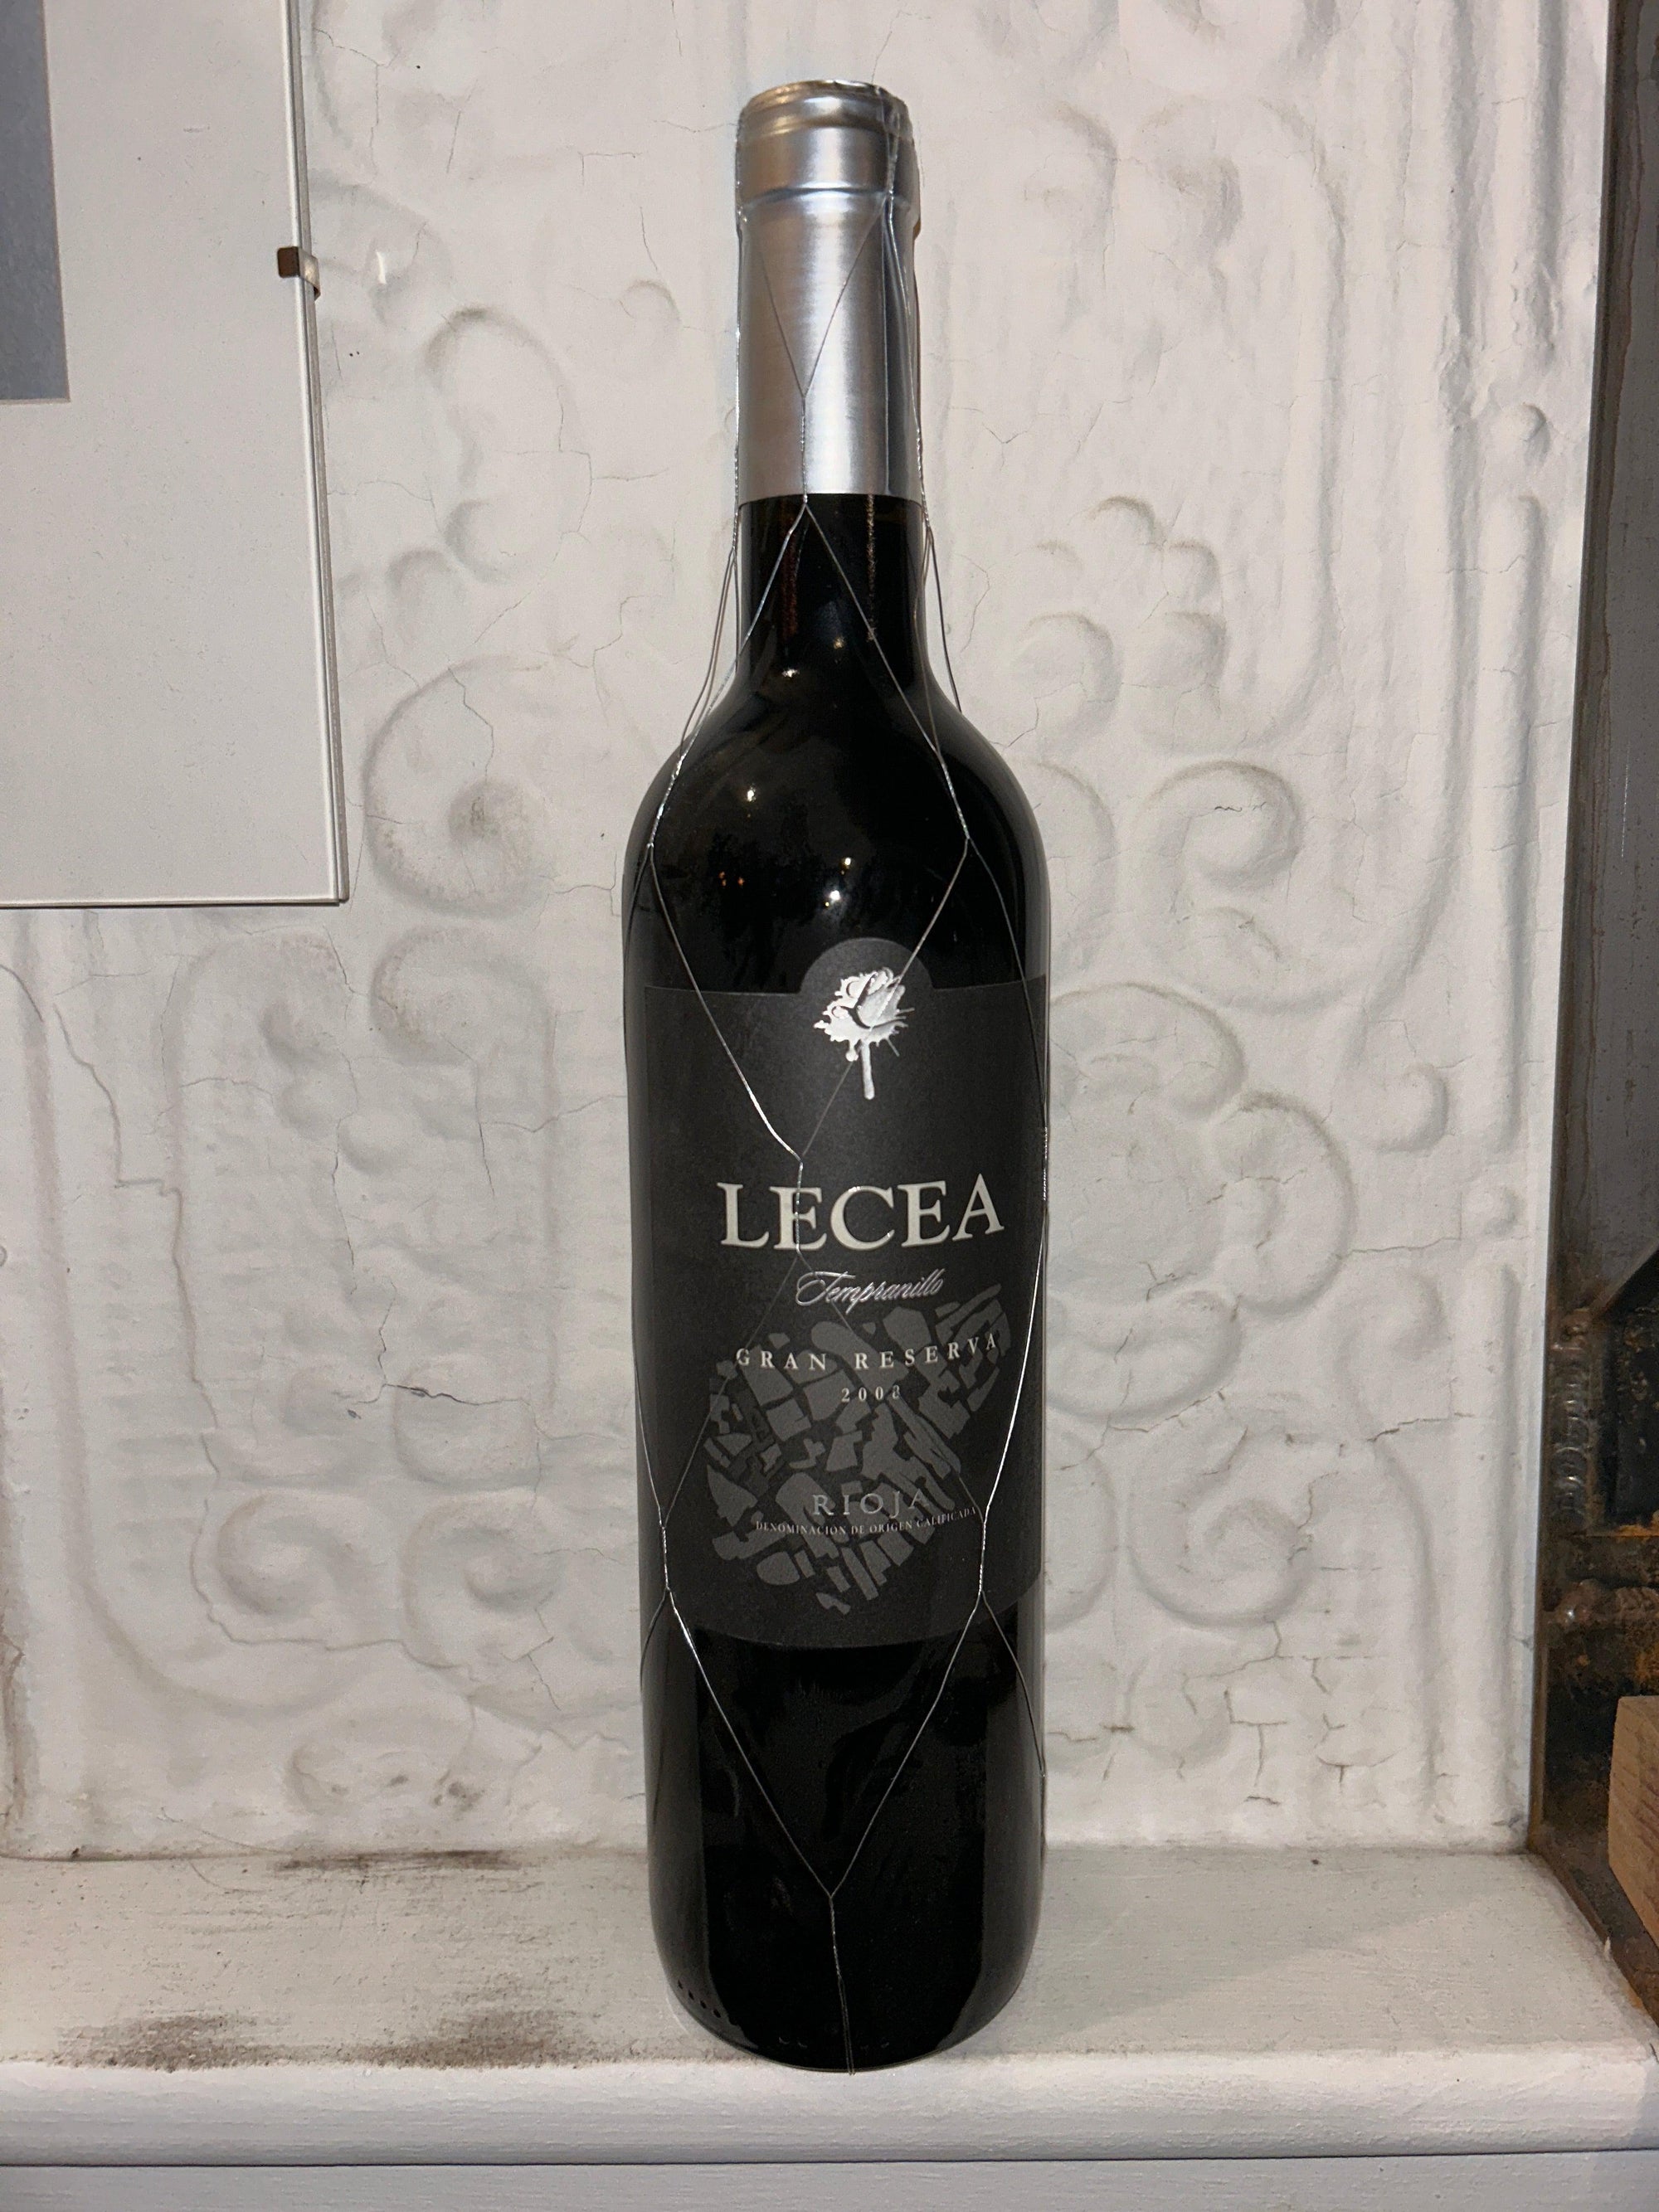 Gran Reserva, Lecea 2008 (Rioja, Spain)-Wine-Bibber & Bell